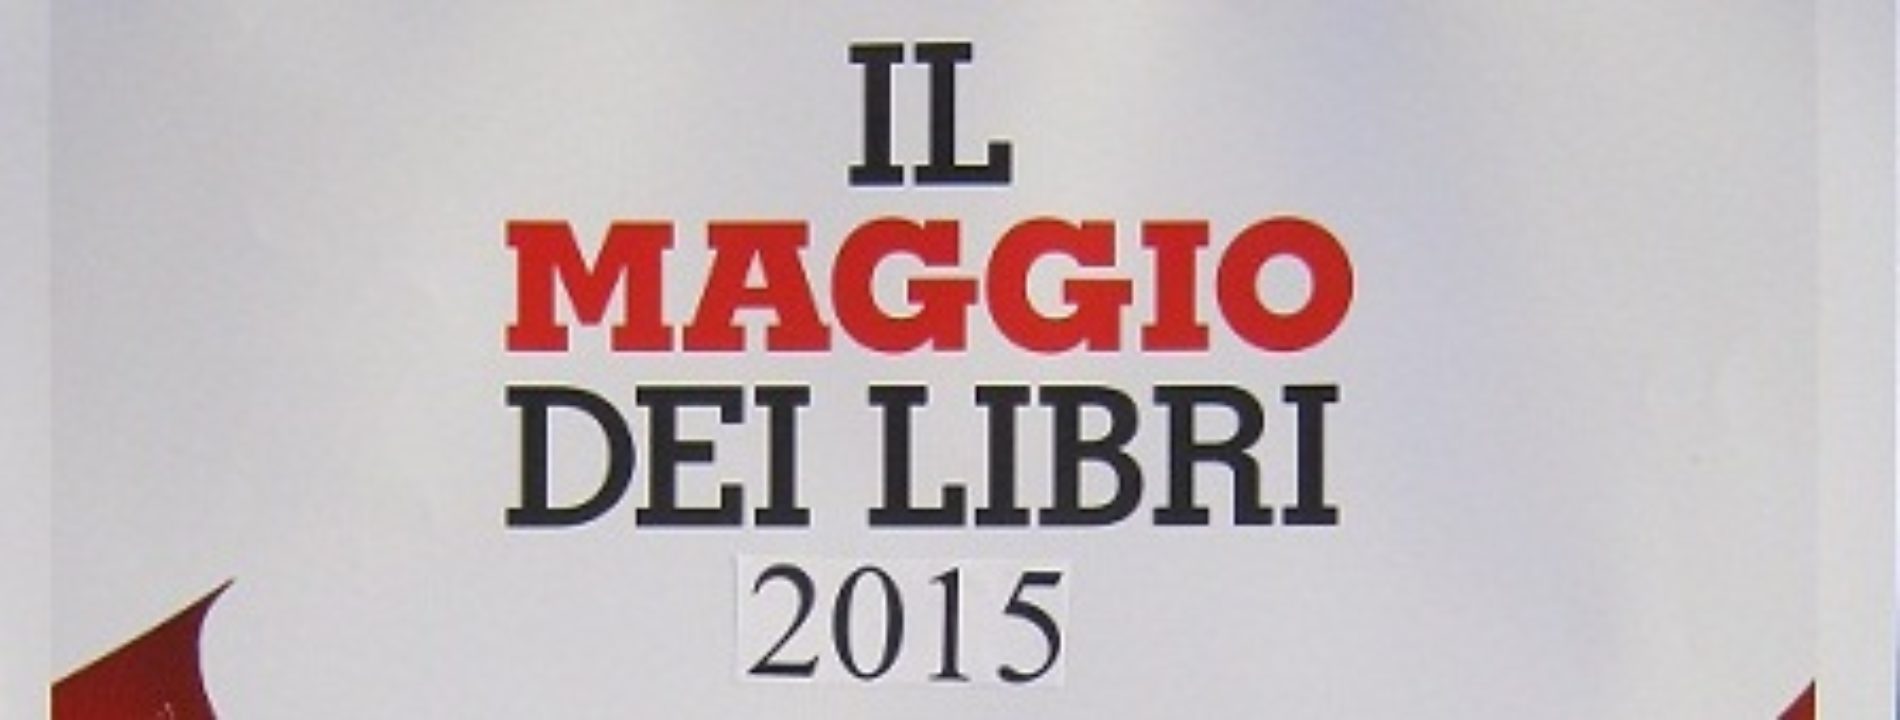 “Il Maggio dei libri 2015” presso la Biblioteca Comunale di Barrafranca